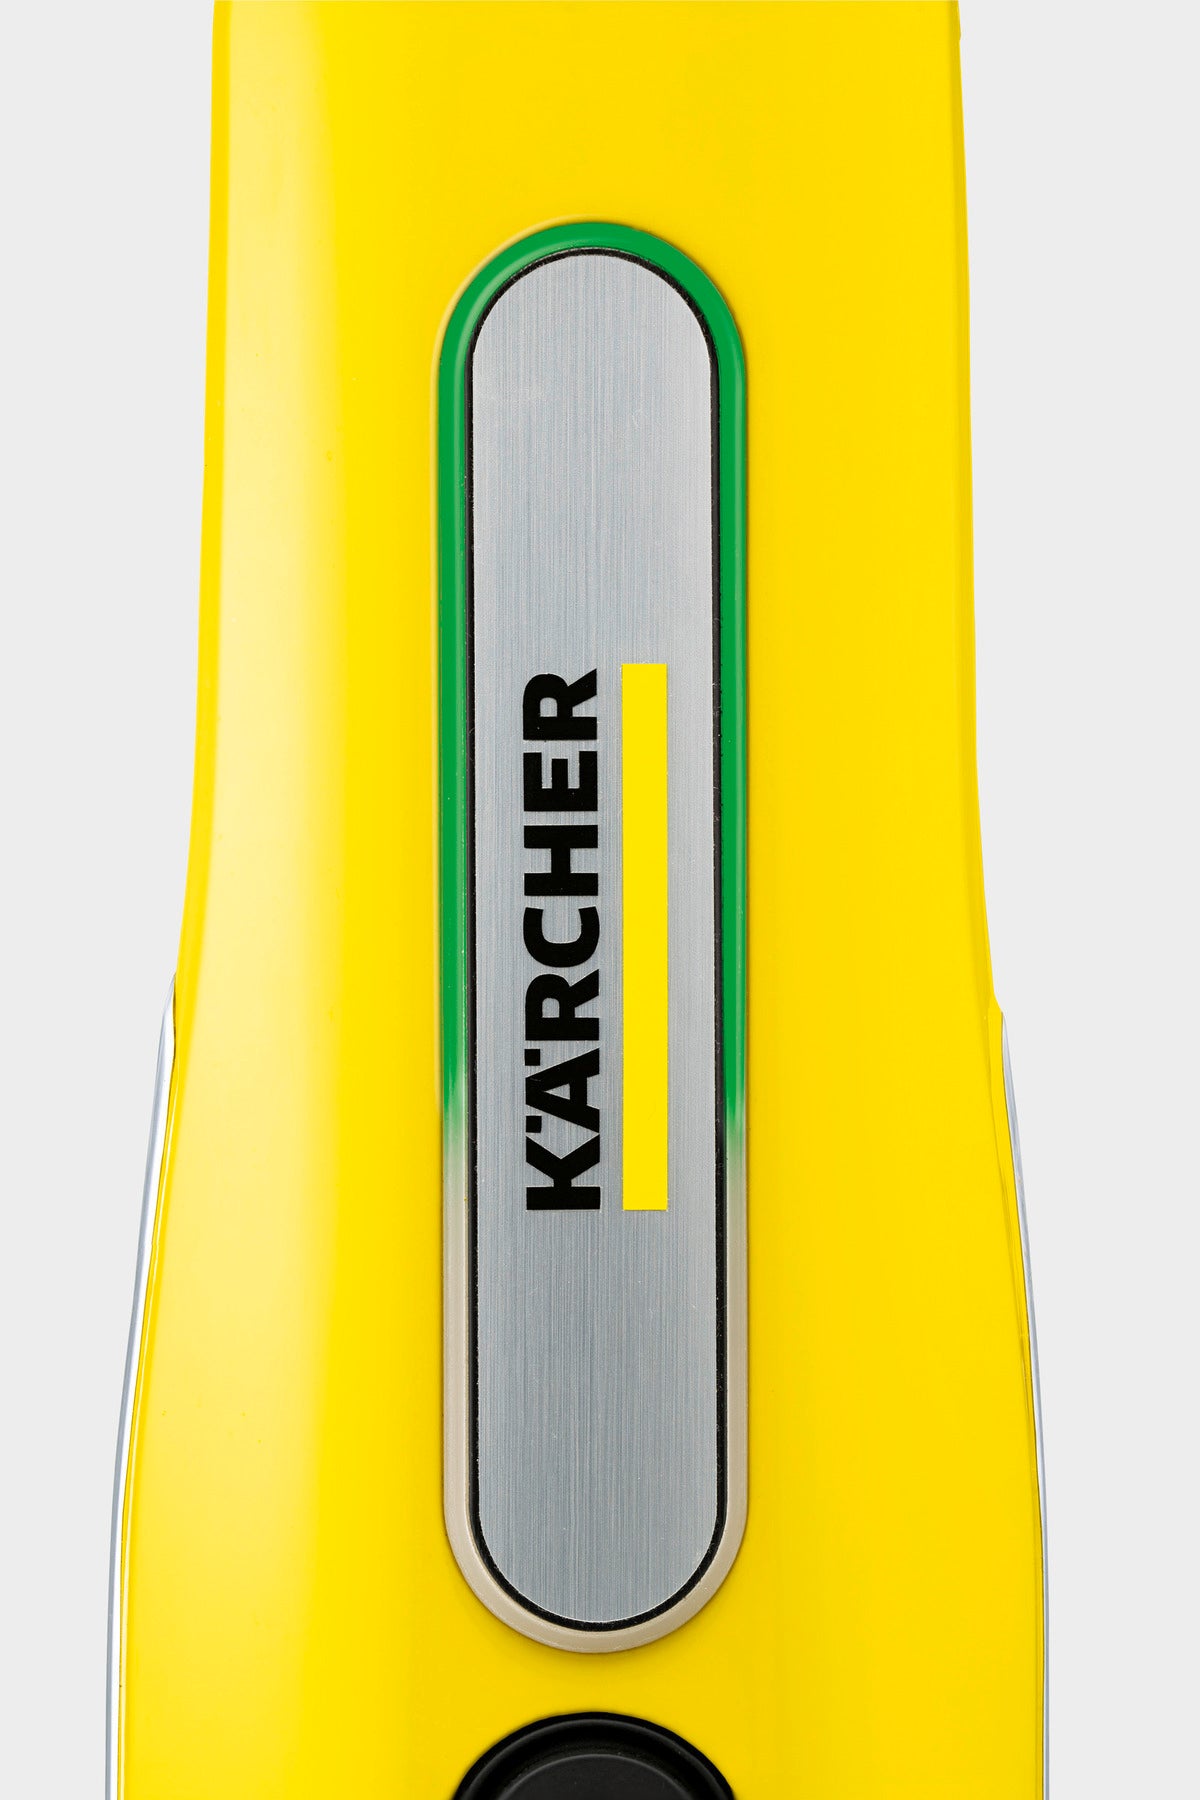 Equipamento de Limpeza a Vapor Karcher SC 3 Upright EasyFix